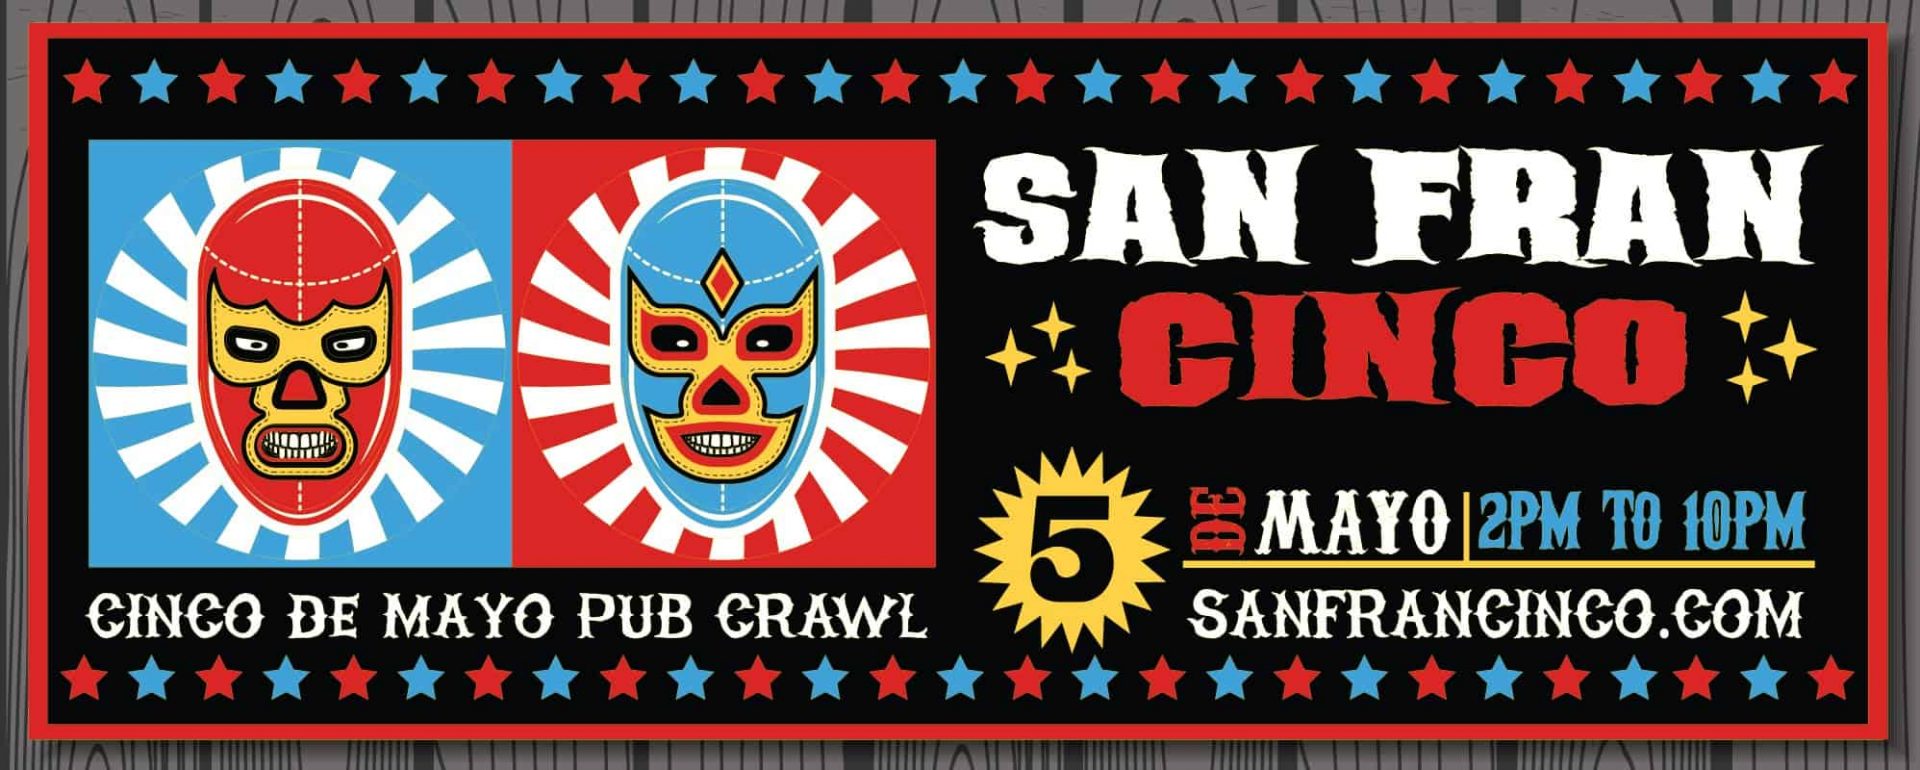 Cinco De Mayo Pub Crawl San Francisco